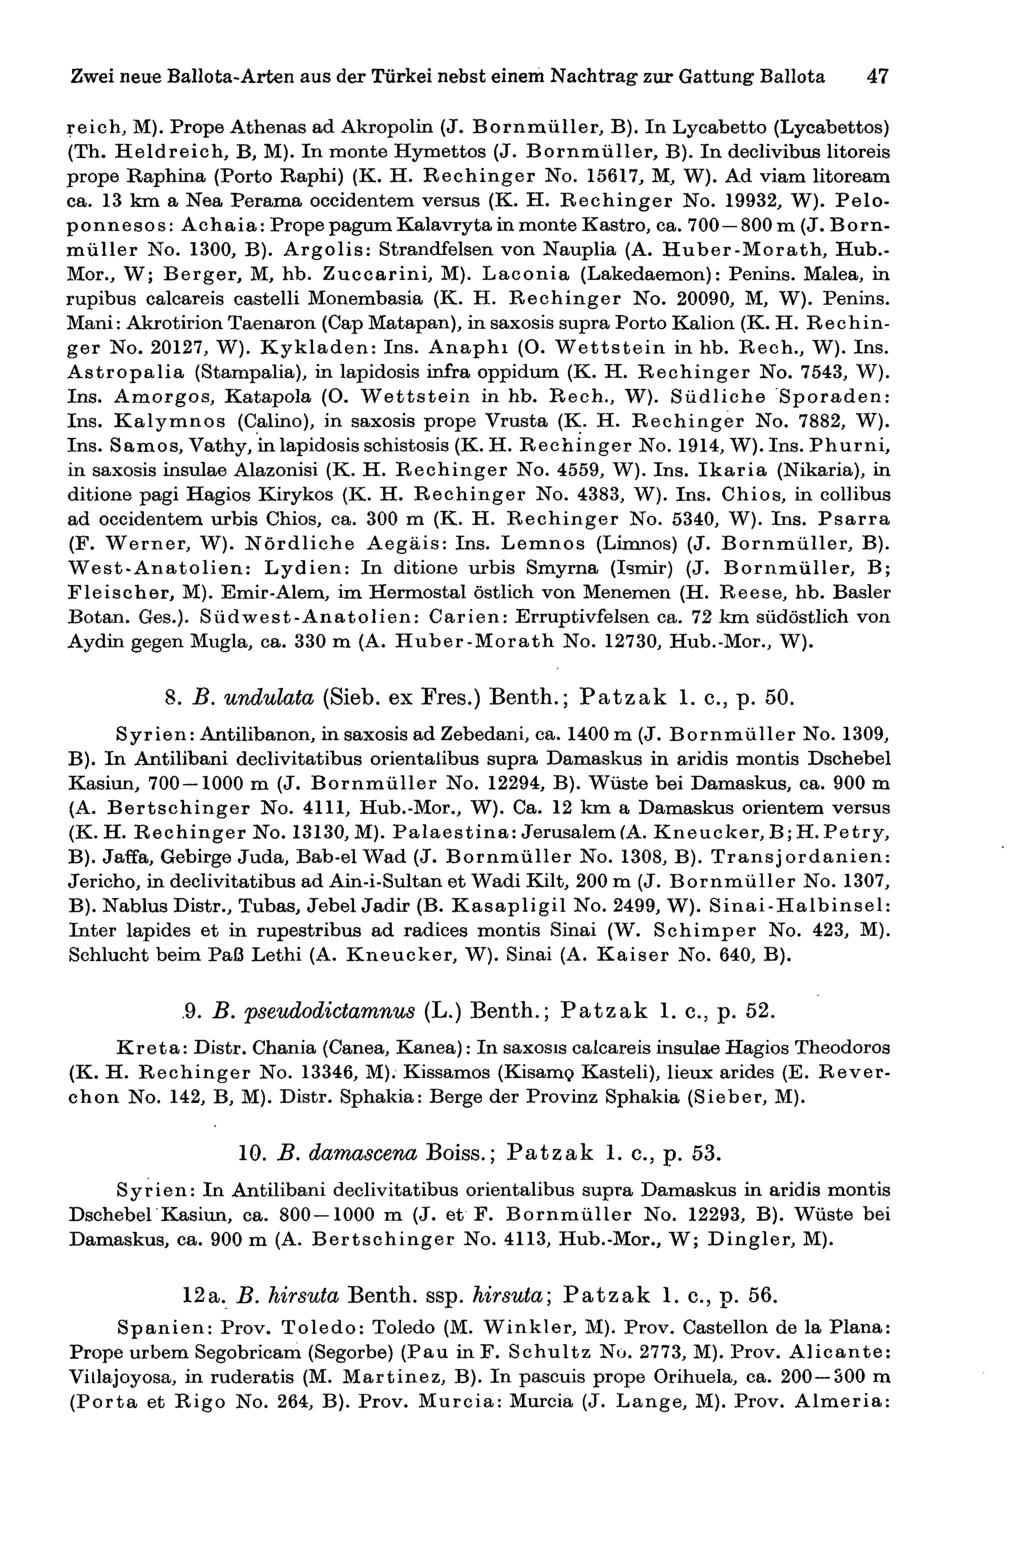 Zwei neue Ballota-Arten aus der Türkei nebst einem Nachtrag zur Gattung Ballota 47 reiche M). Prope Athenas ad Akropolin (J. Bornmüller, B). In Lycabetto (Lycabettos) (Th. Held reich, B, M).